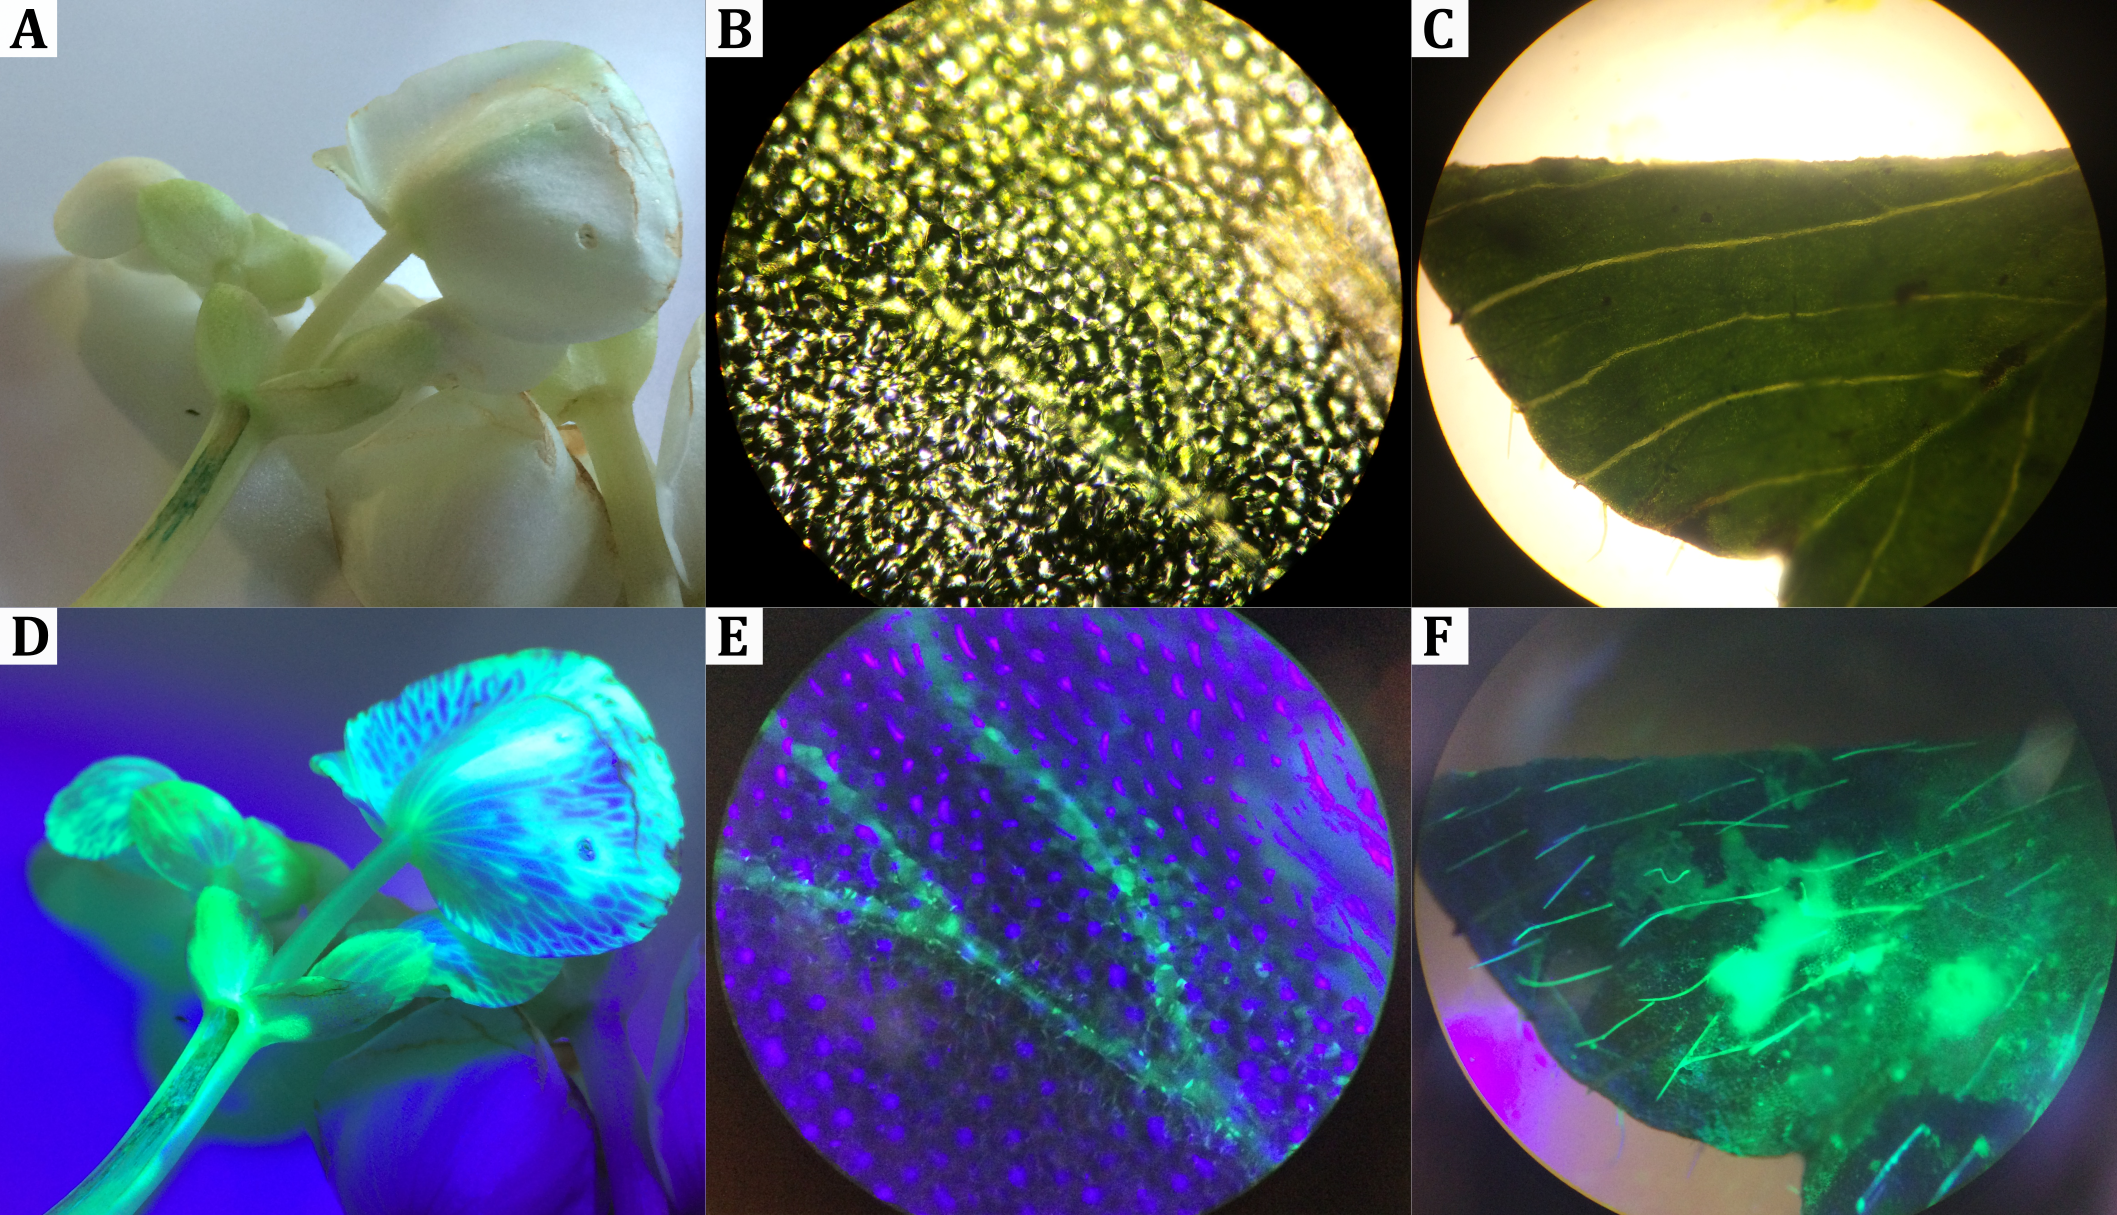 Vergleich fluoreszenzmarkierter Pflanzenbestandteile bei Tageslicht (oben) bzw. unter UV-Licht (unten). In (D) und (E) ist das Leitgewebe anhand der Fluoreszenz deutlich zu erkennen. In (F) fluoreszieren hydrophile Trichome.